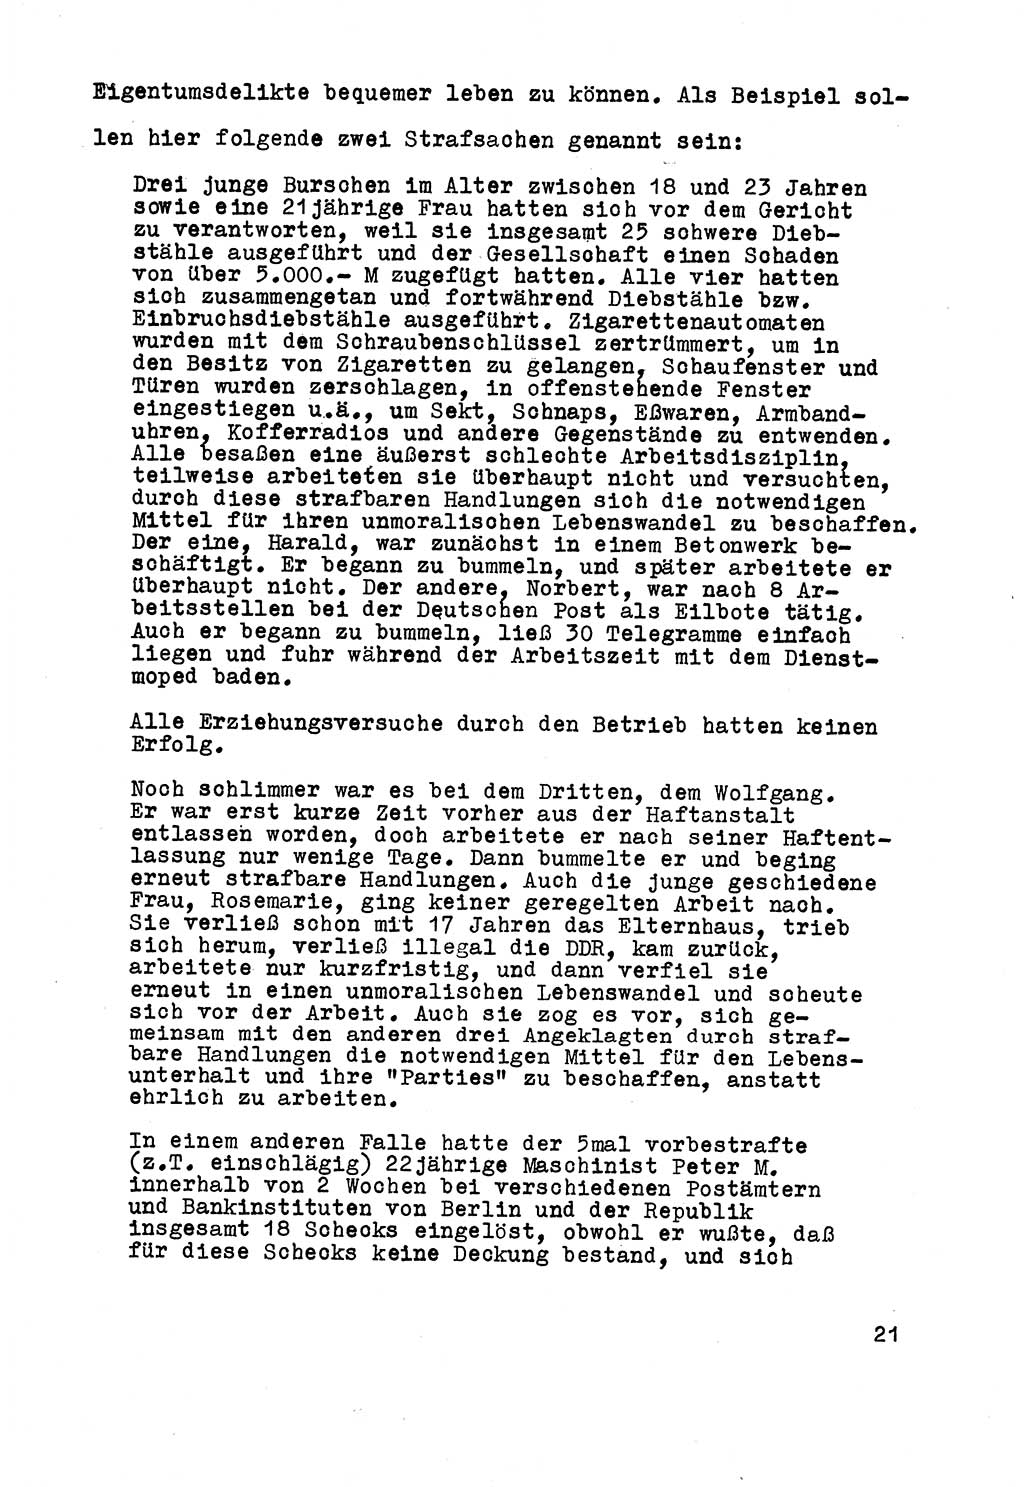 Strafrecht der DDR (Deutsche Demokratische Republik), Besonderer Teil, Lehrmaterial, Heft 5 1970, Seite 21 (Strafr. DDR BT Lehrmat. H. 5 1970, S. 21)